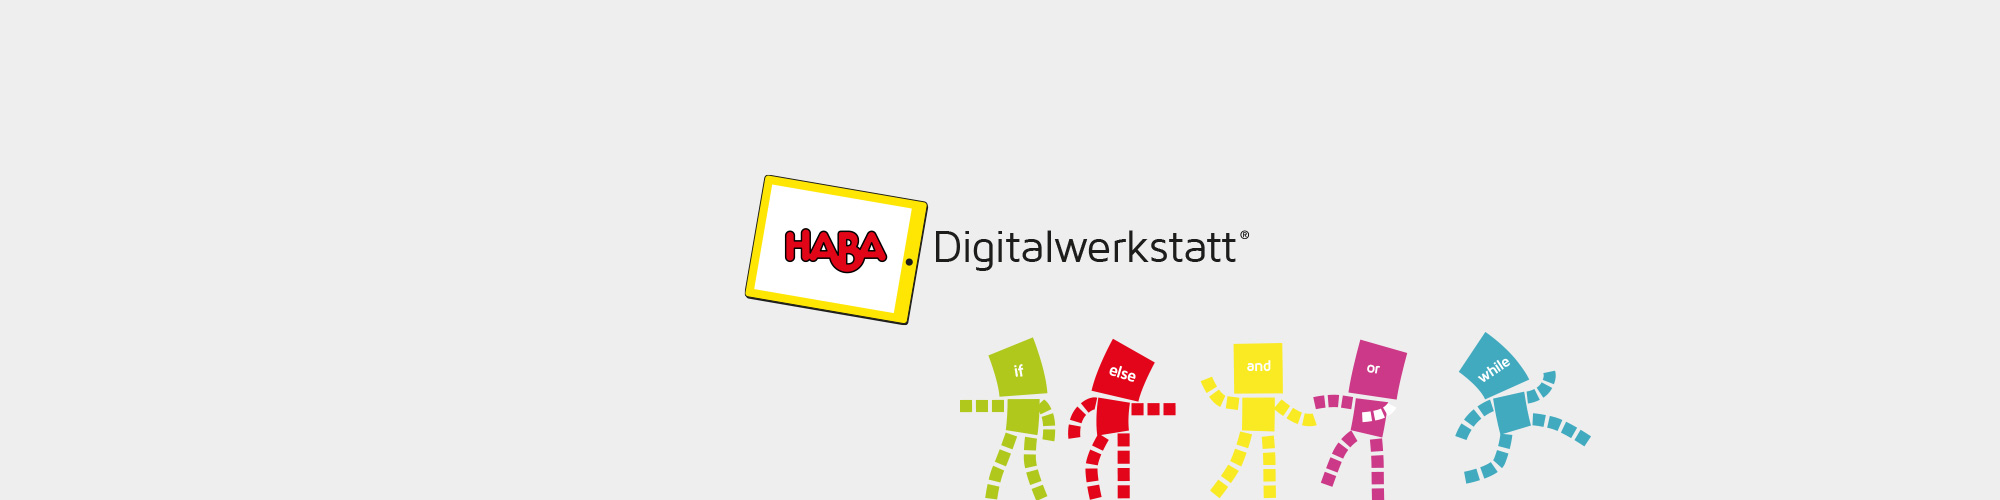 HABA Digitalwerkstatt - Corporate Identity für das StartUp